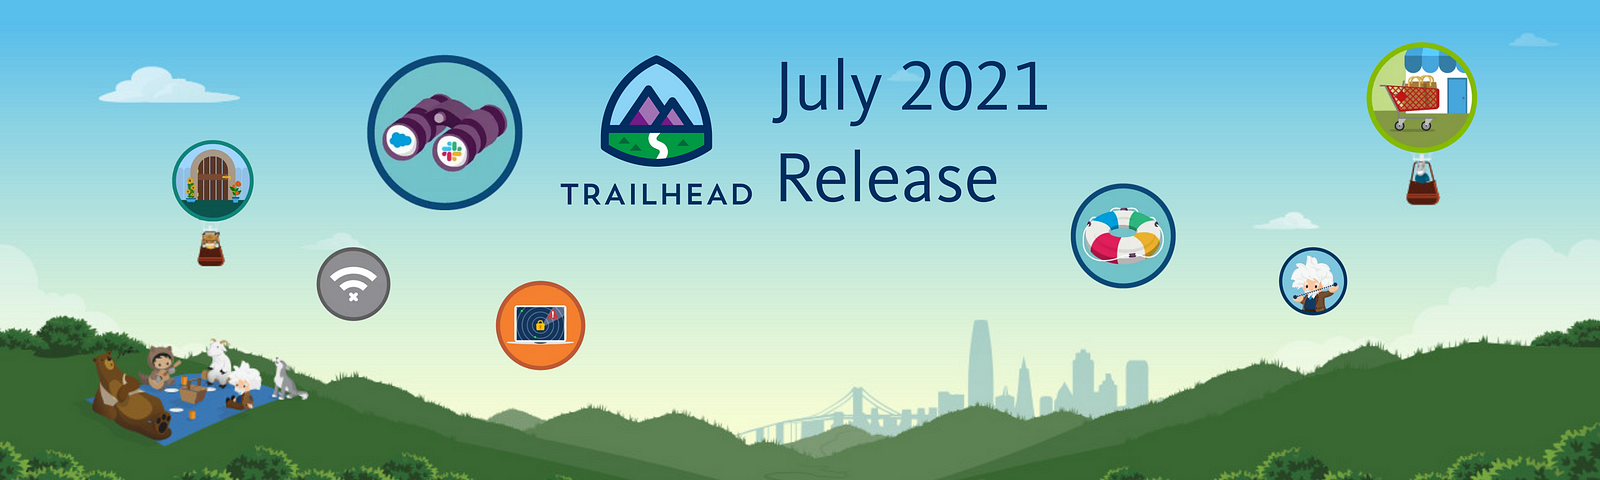 Salesforce trailhead badge release July